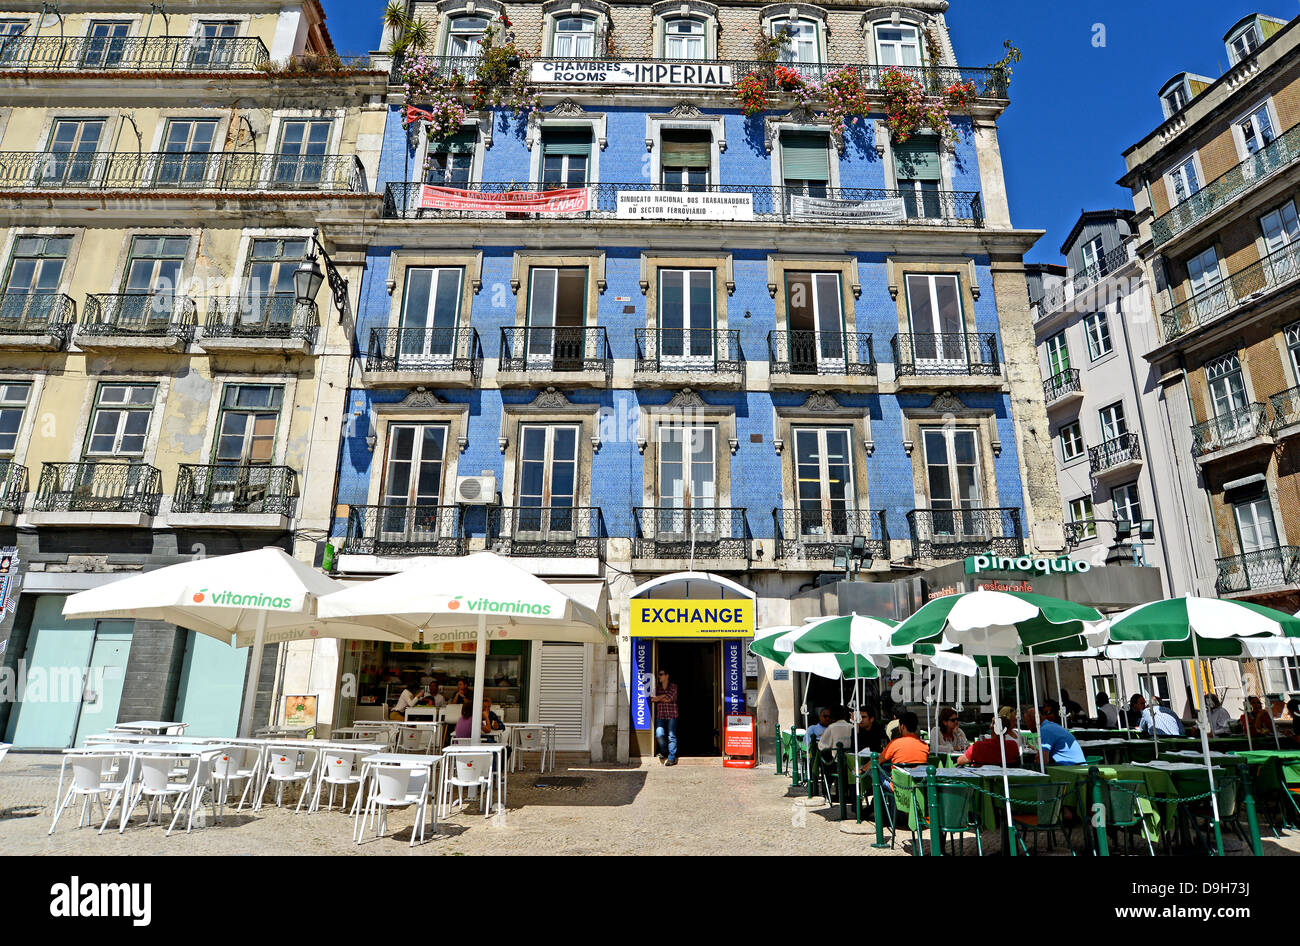 Ancien bâtiment de l'argent change boutique bar terrasse Lisbonne Portugal Banque D'Images